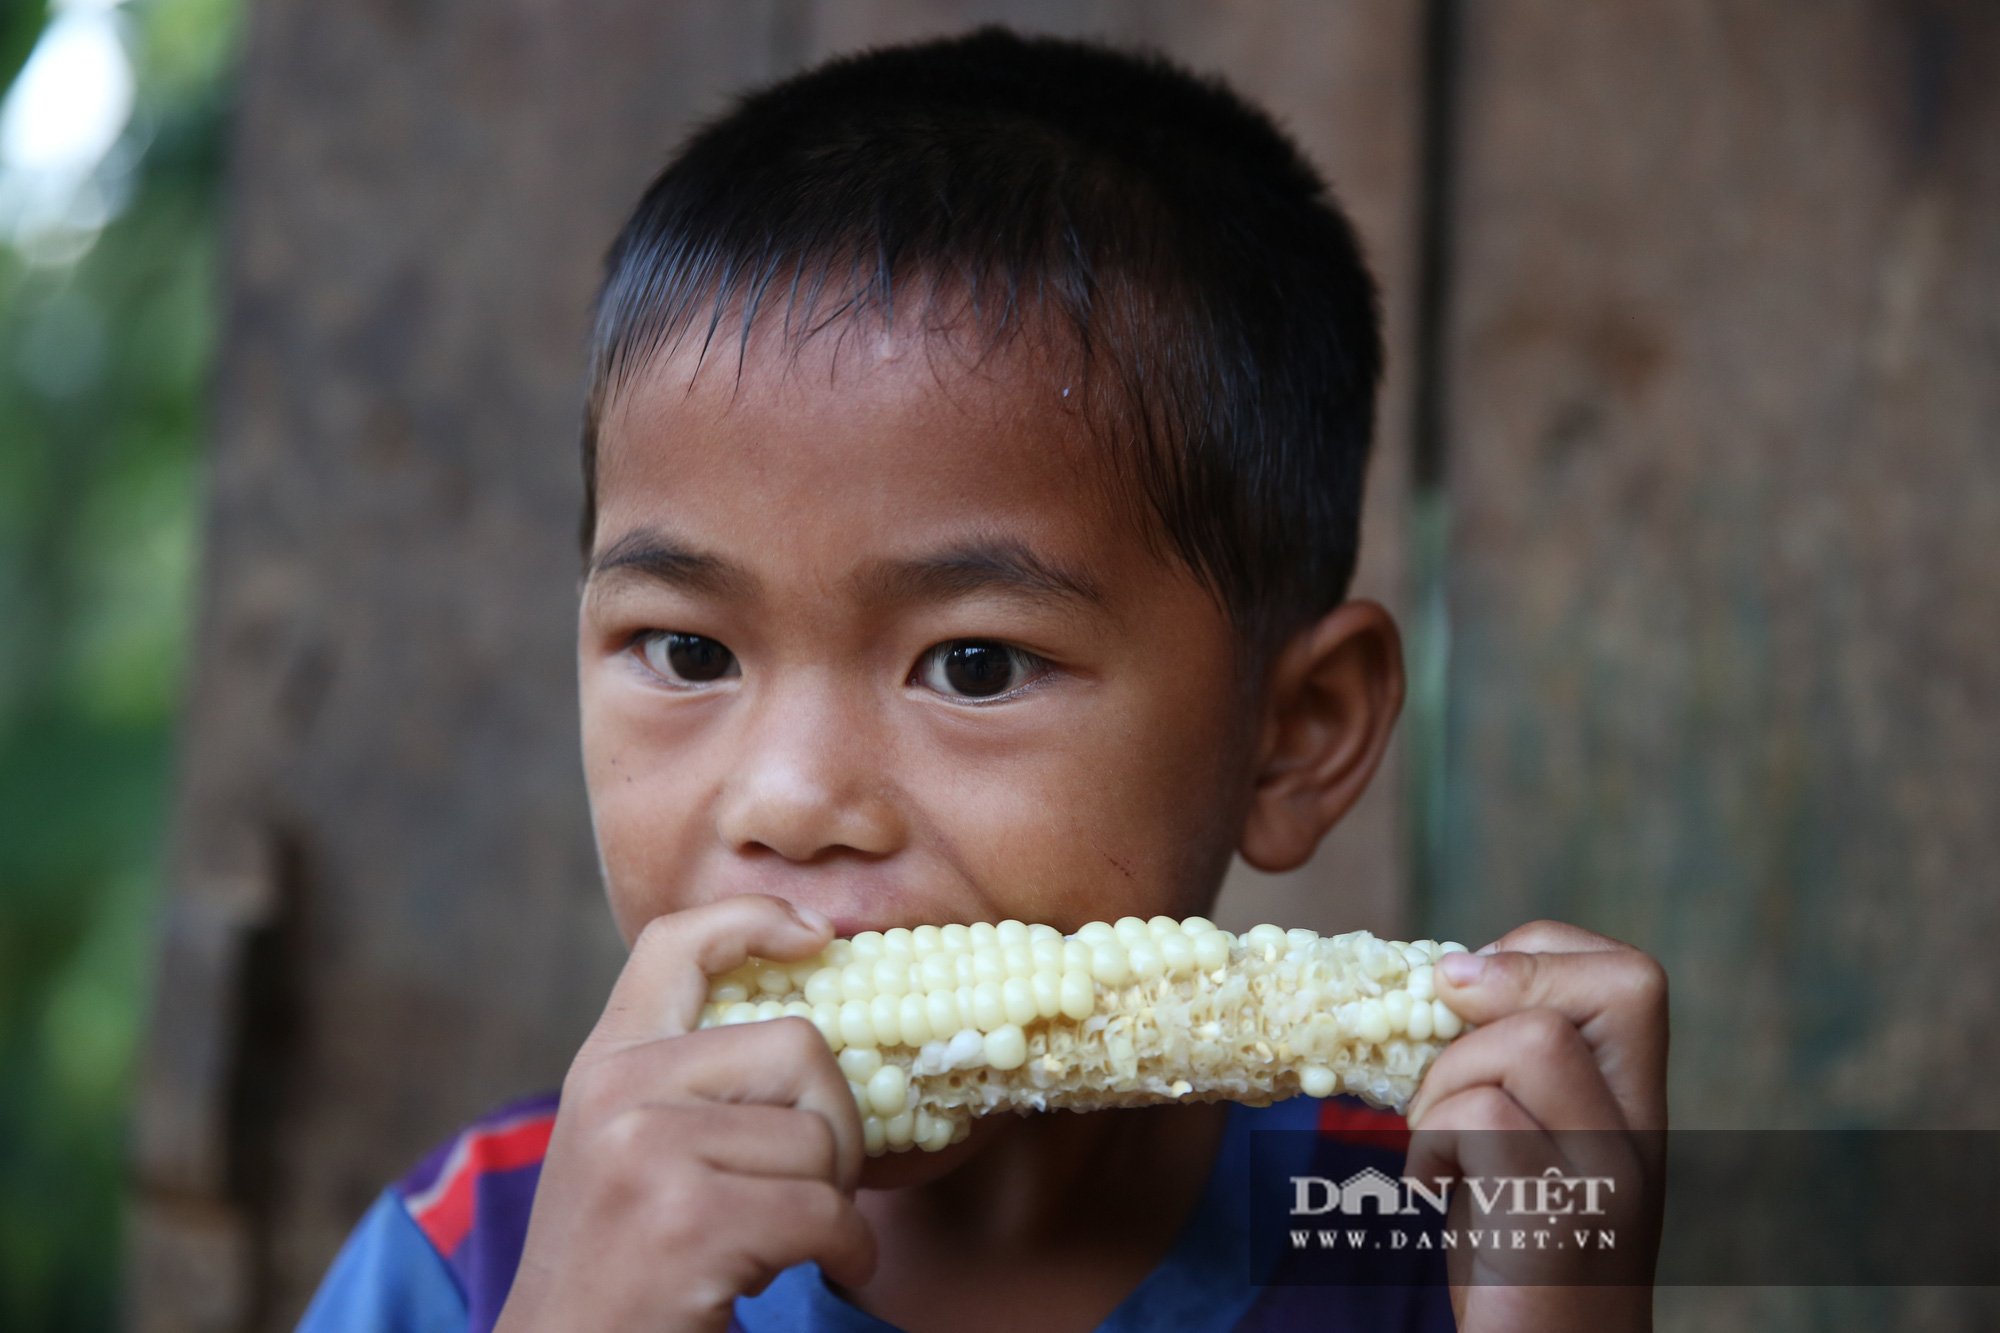 Nghẹn lòng những “bữa ăn” trên bản nghèo người Mông - Ảnh 7.